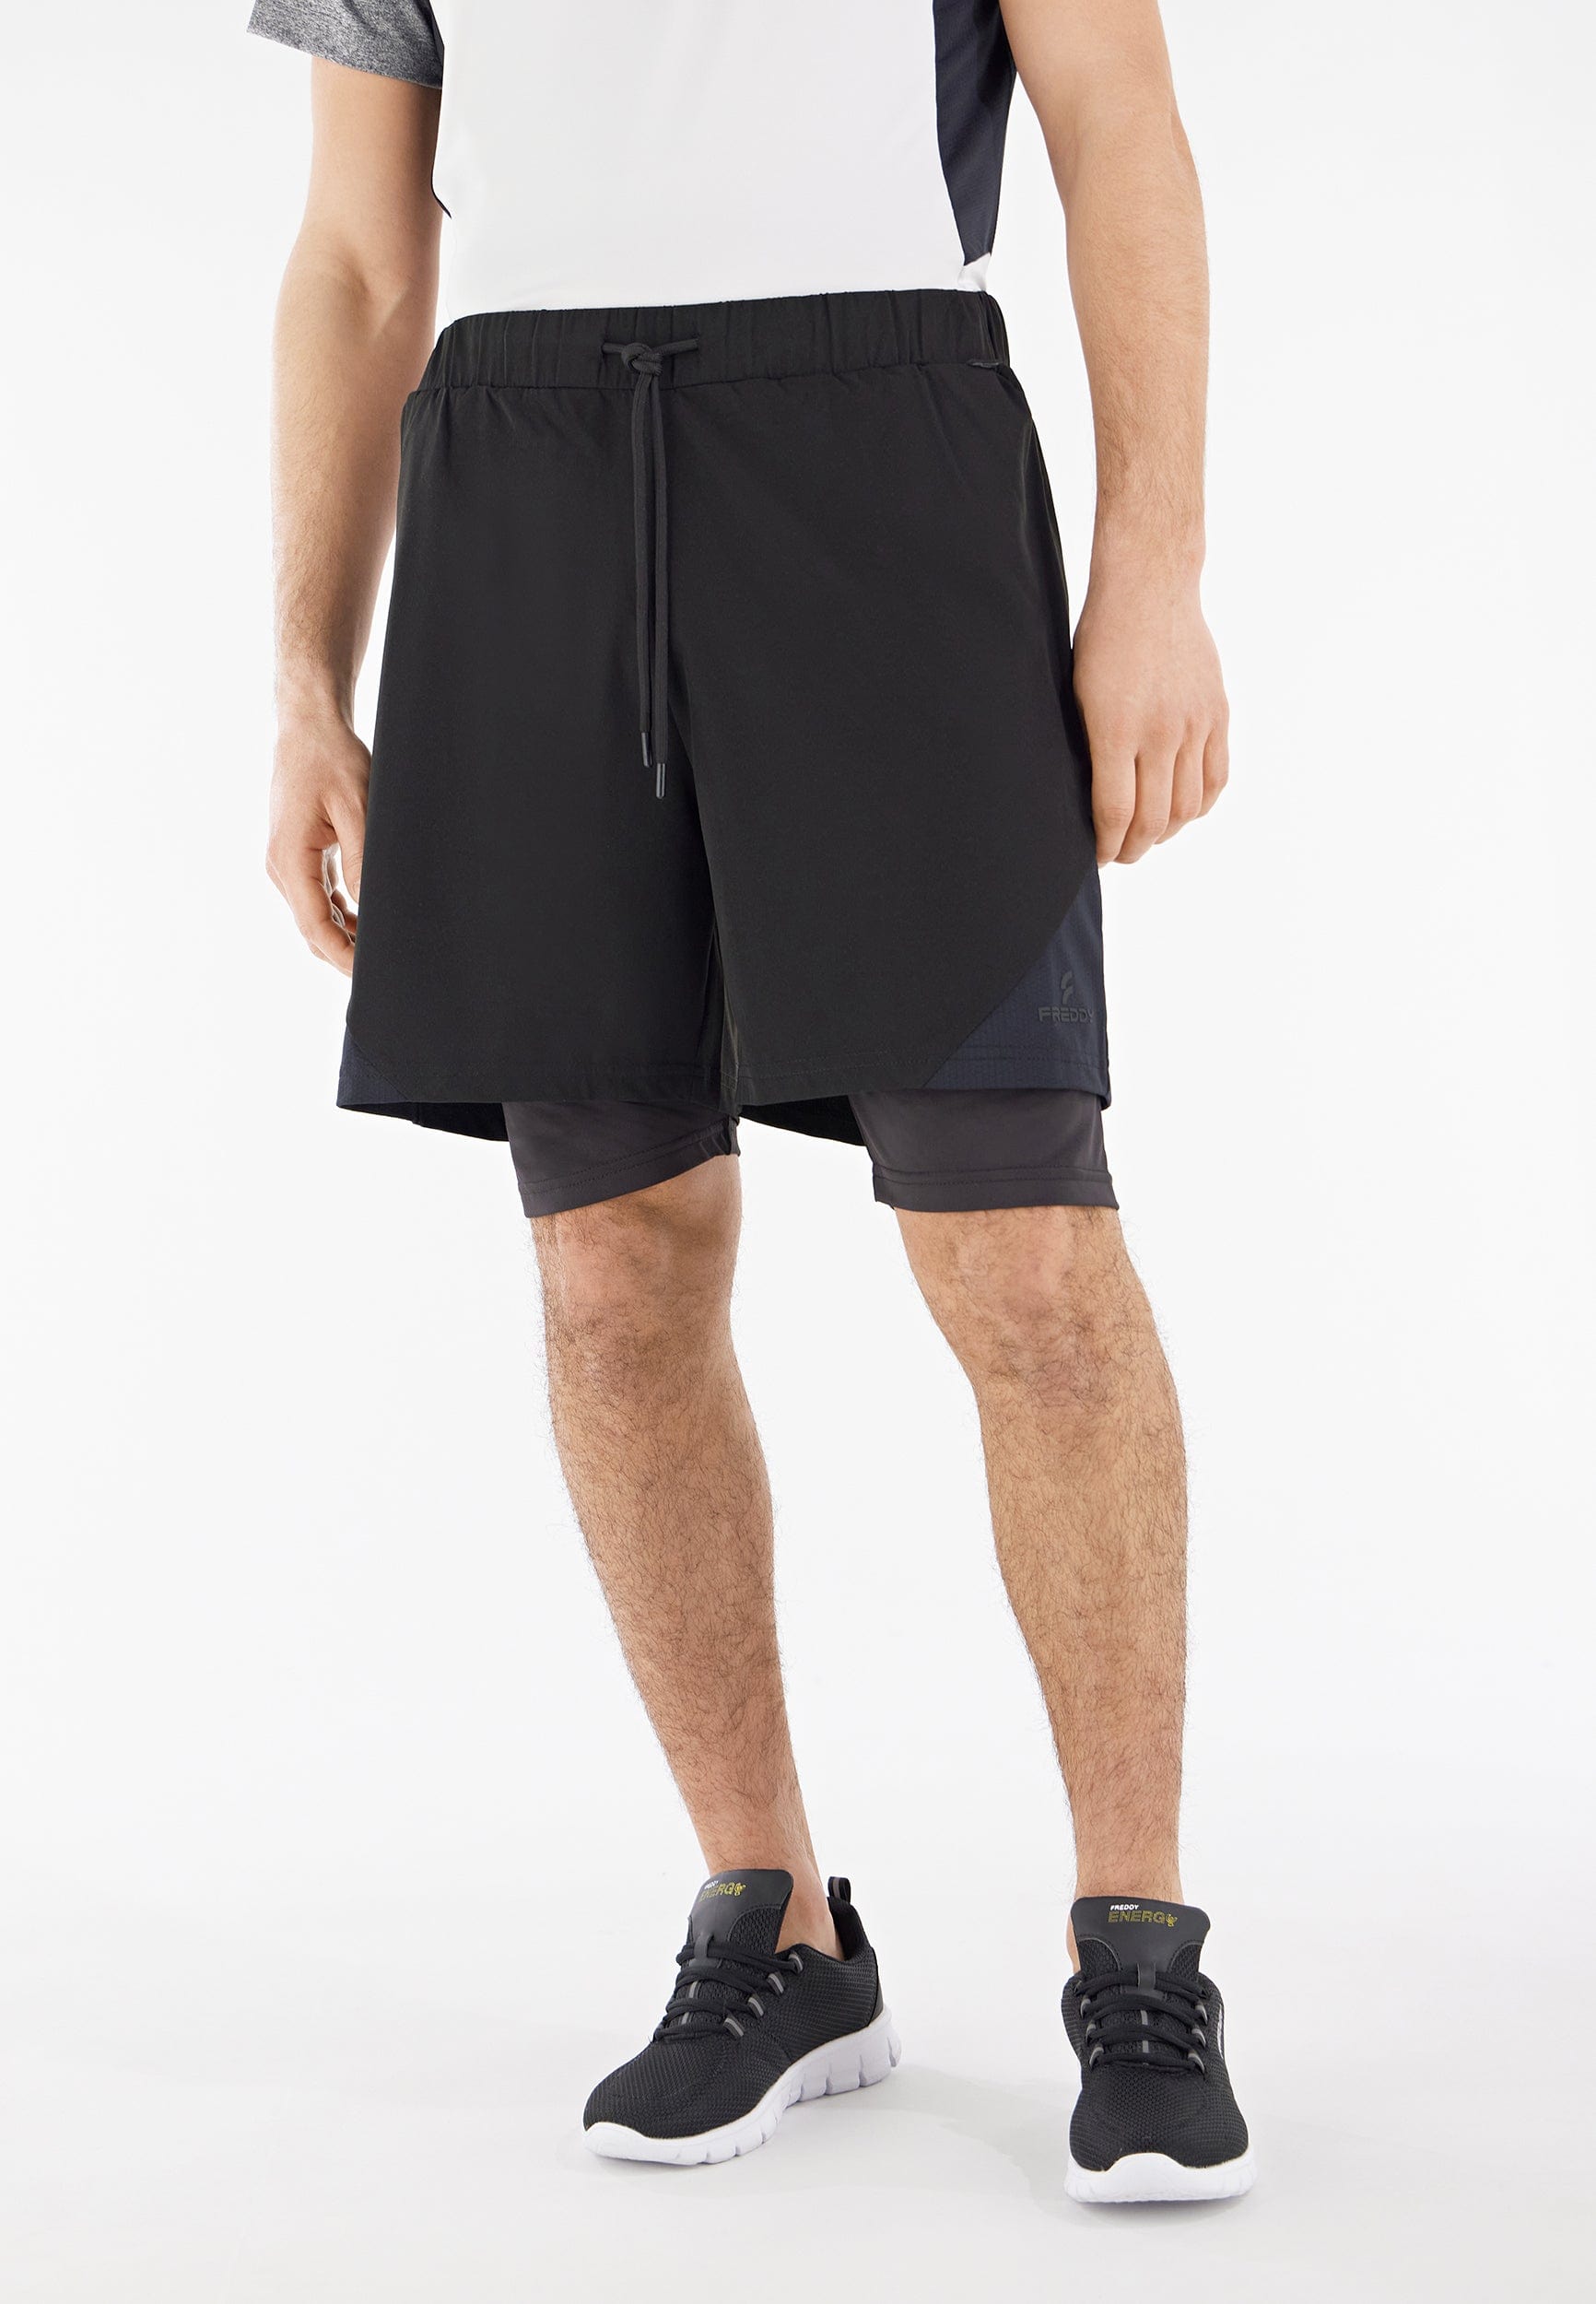 Men's Active Shorts - Black 1